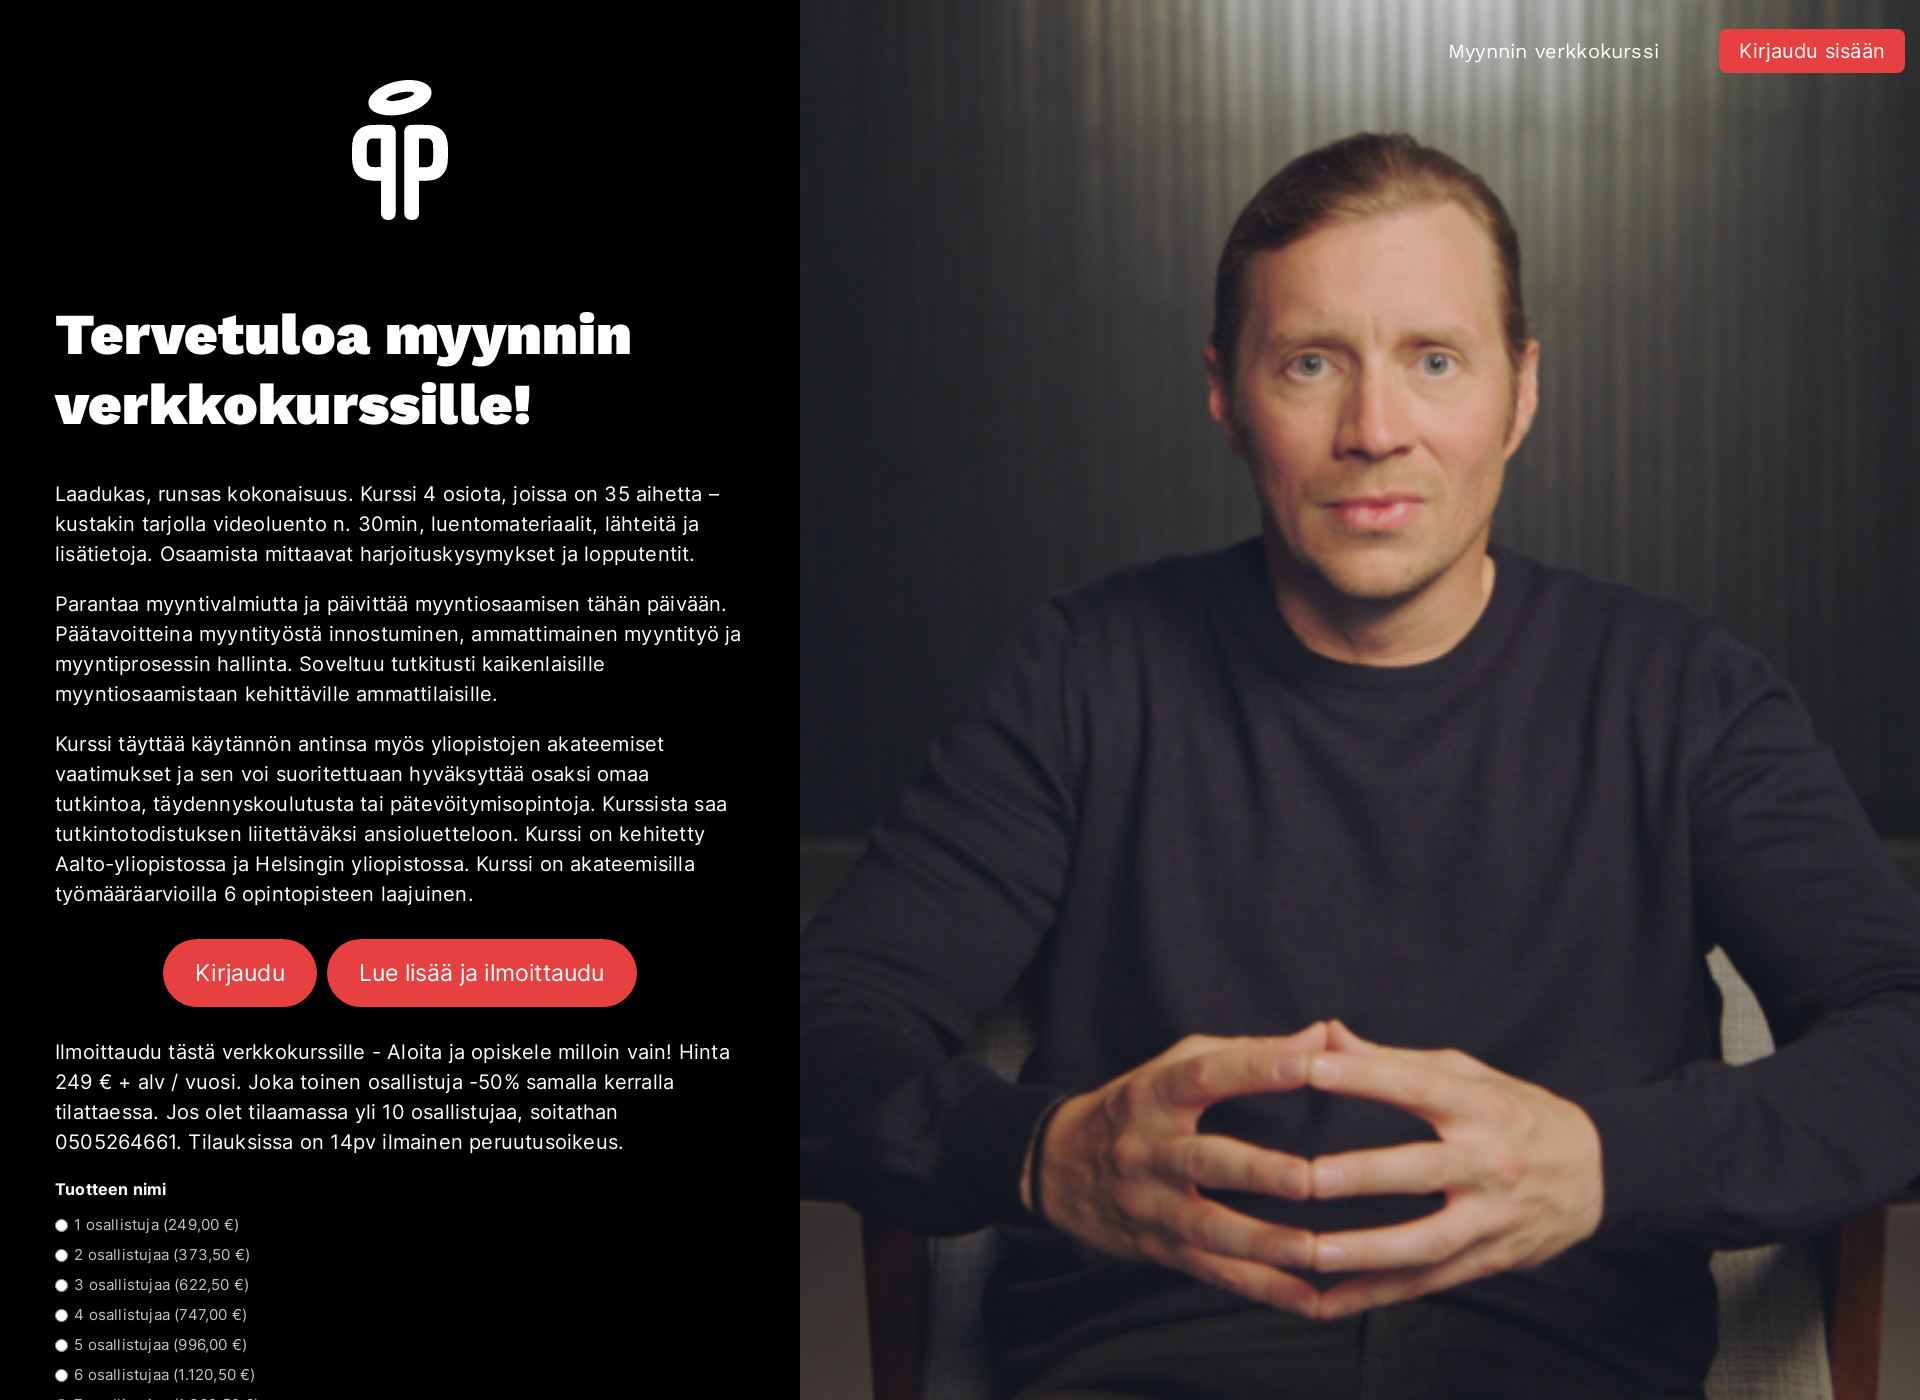 Näyttökuva parvisenakatemia.fi